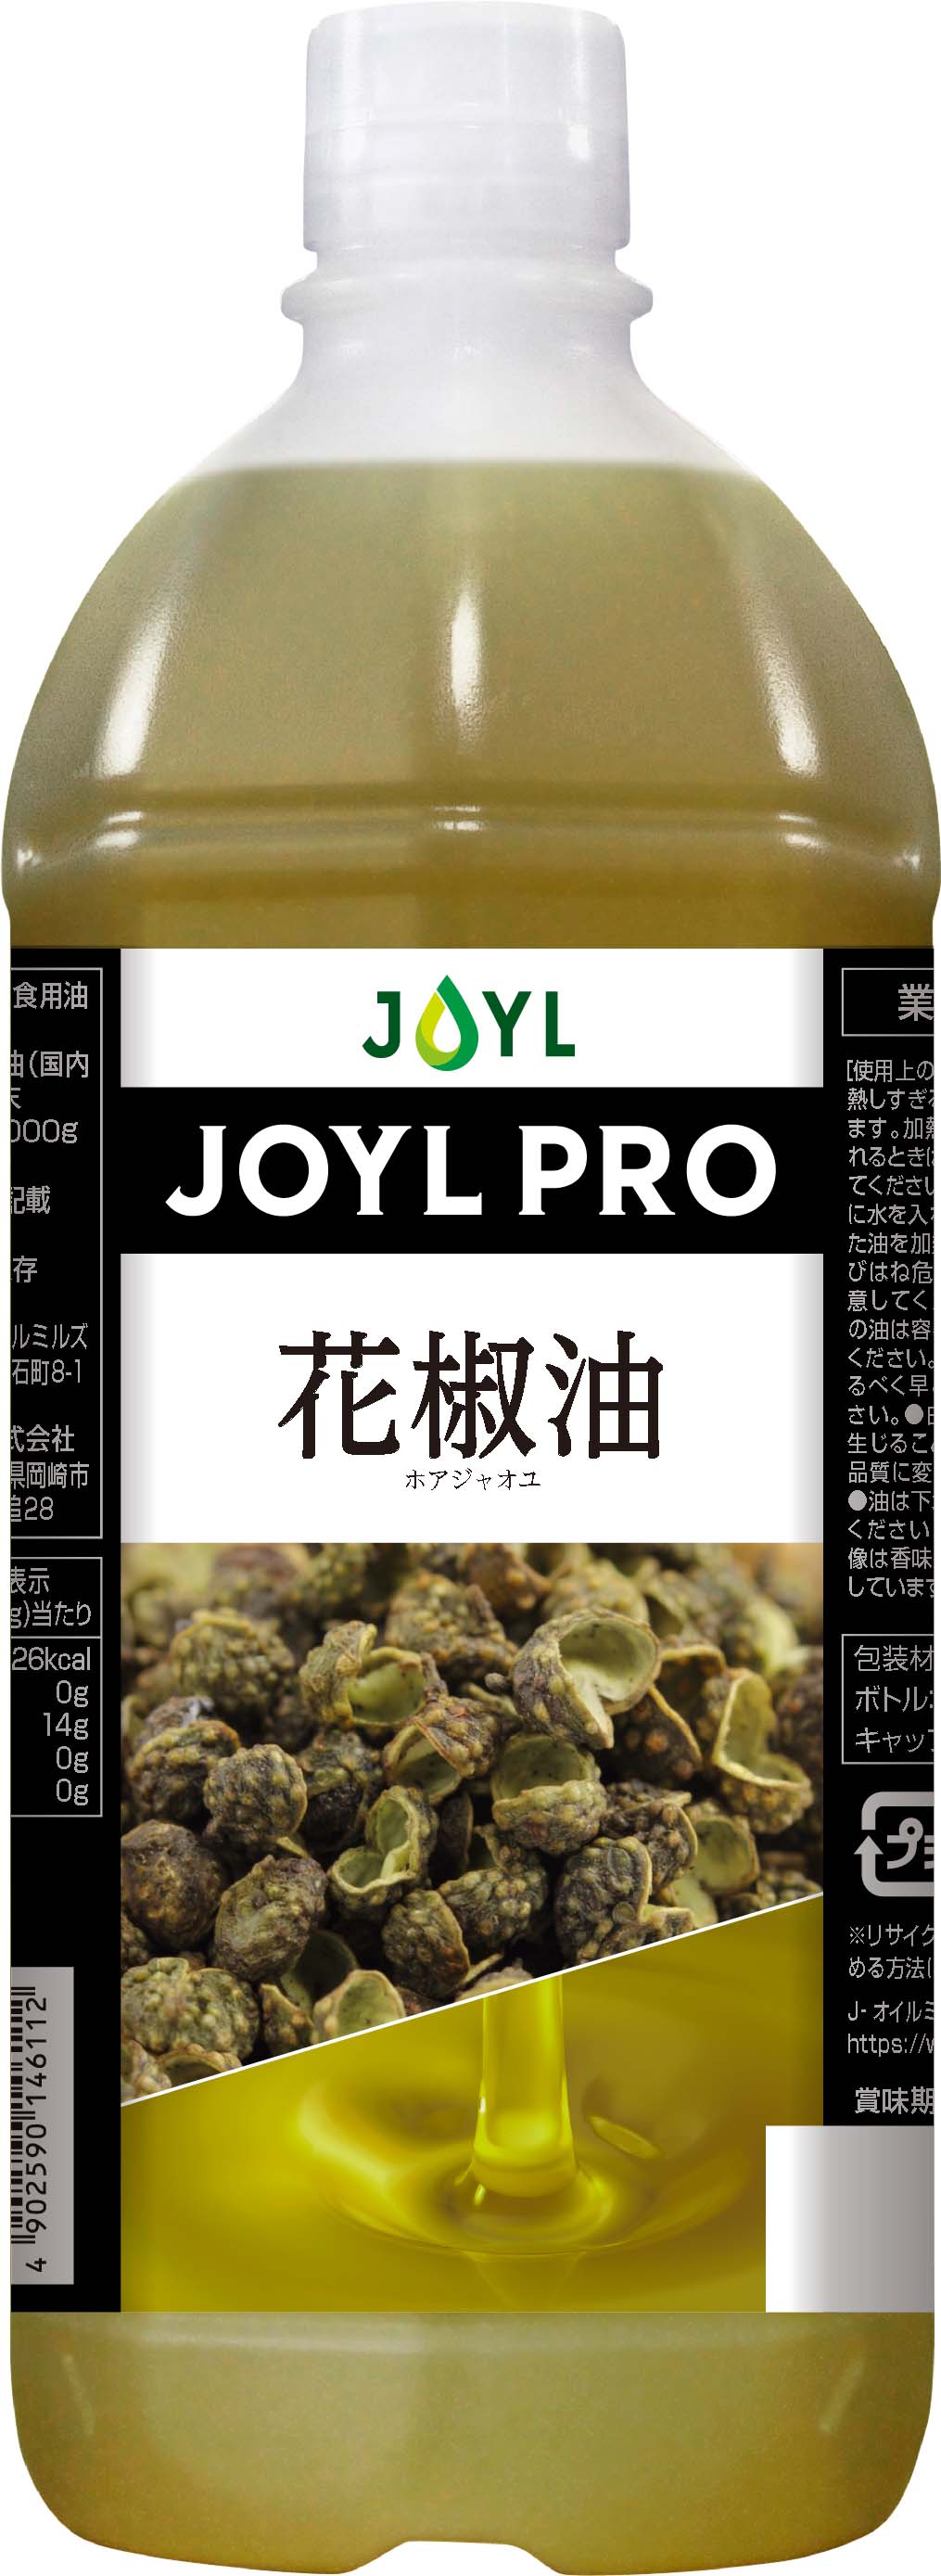 JOYLPRO花椒油1,000g